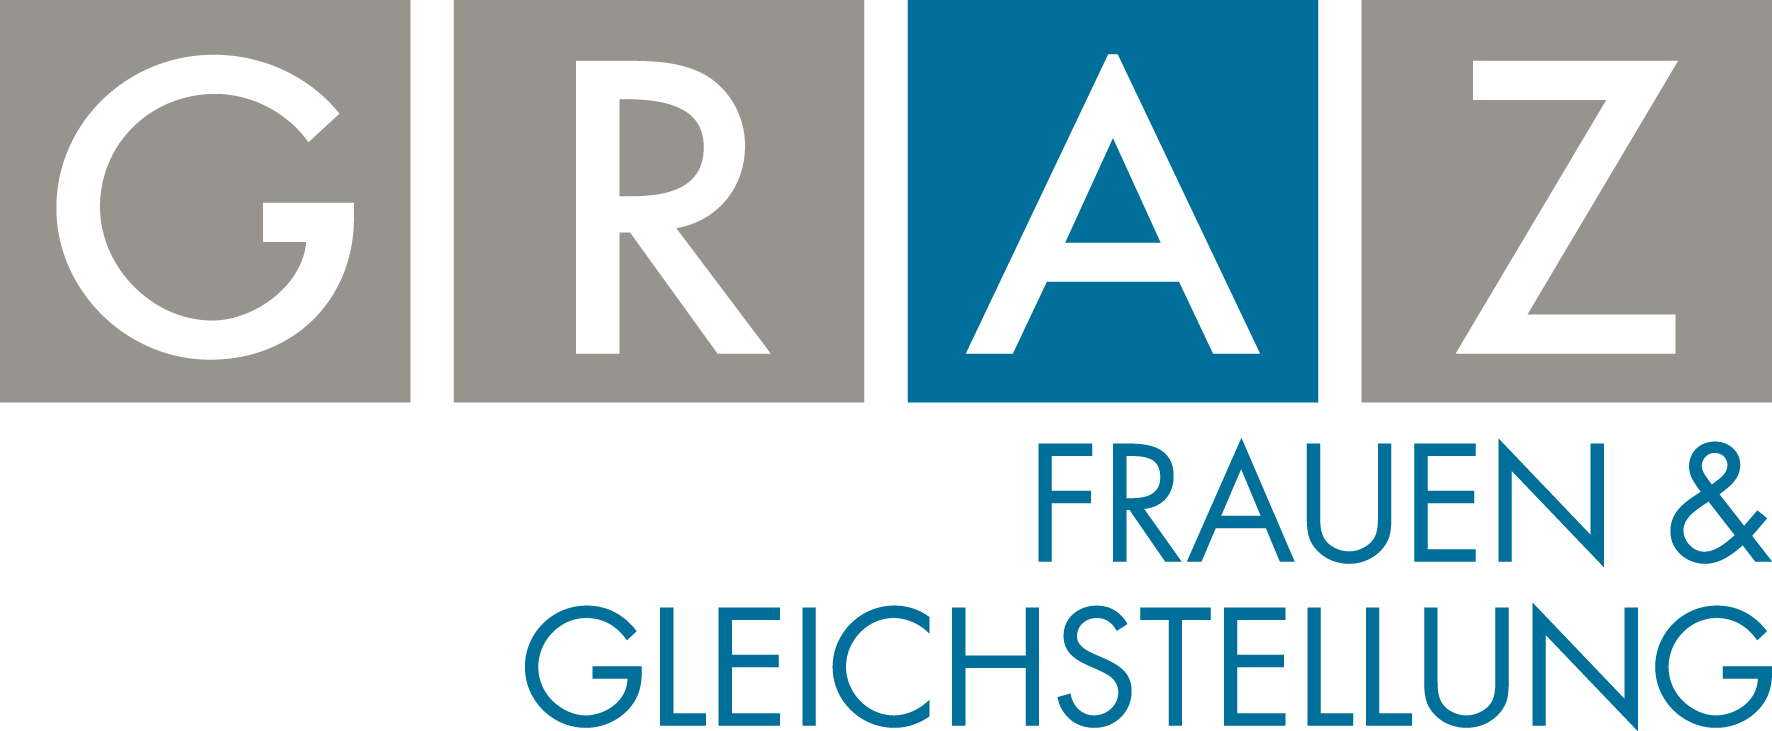 Logo Stadt Graz Referat für Frauen & Gleichstellung